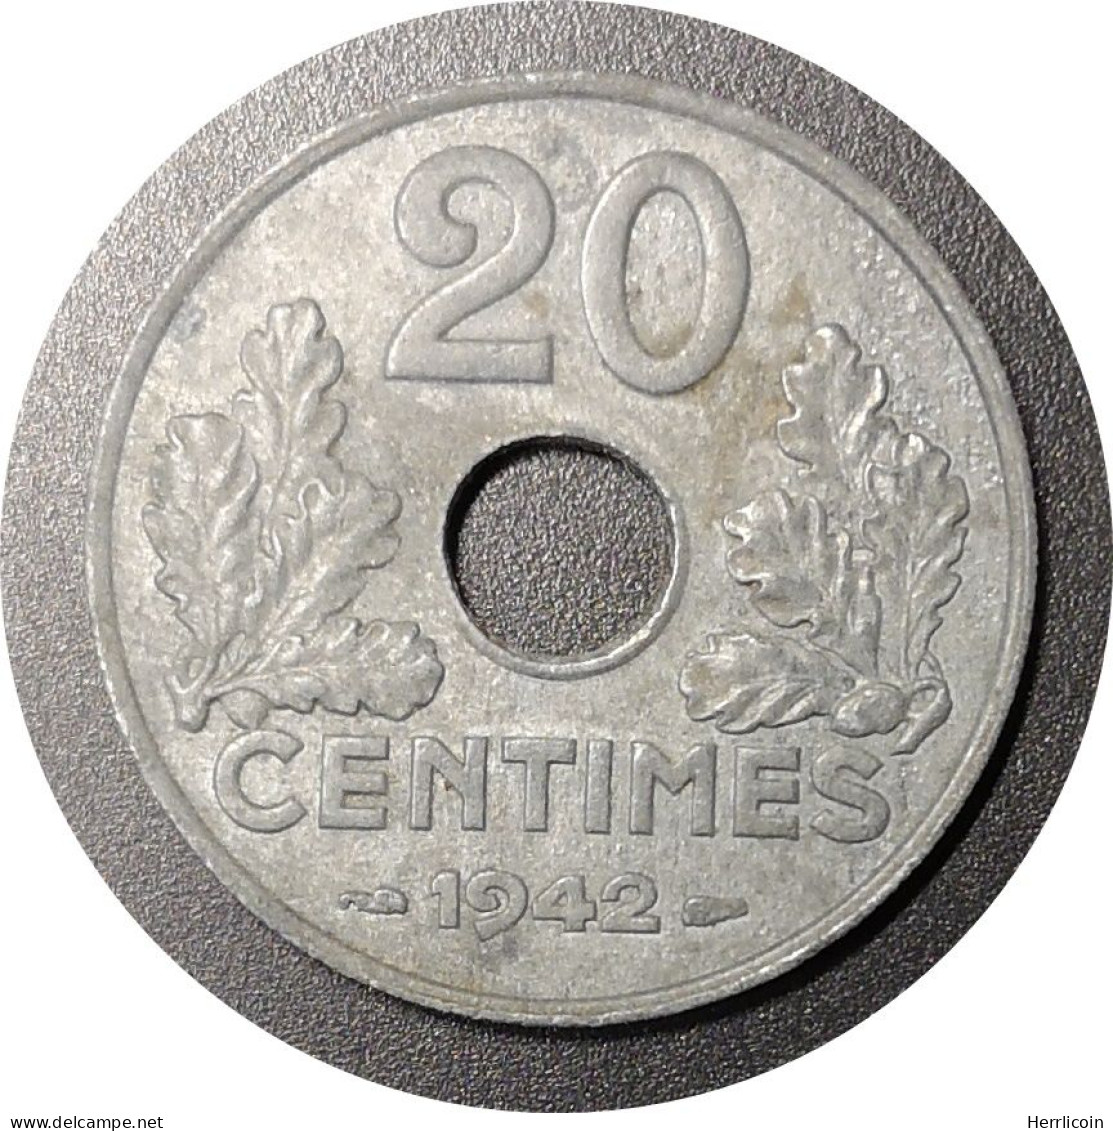 Monnaie France - 1942 - 20 Centimes Etat Français Zinc, Type 20, Lourde - 20 Centimes